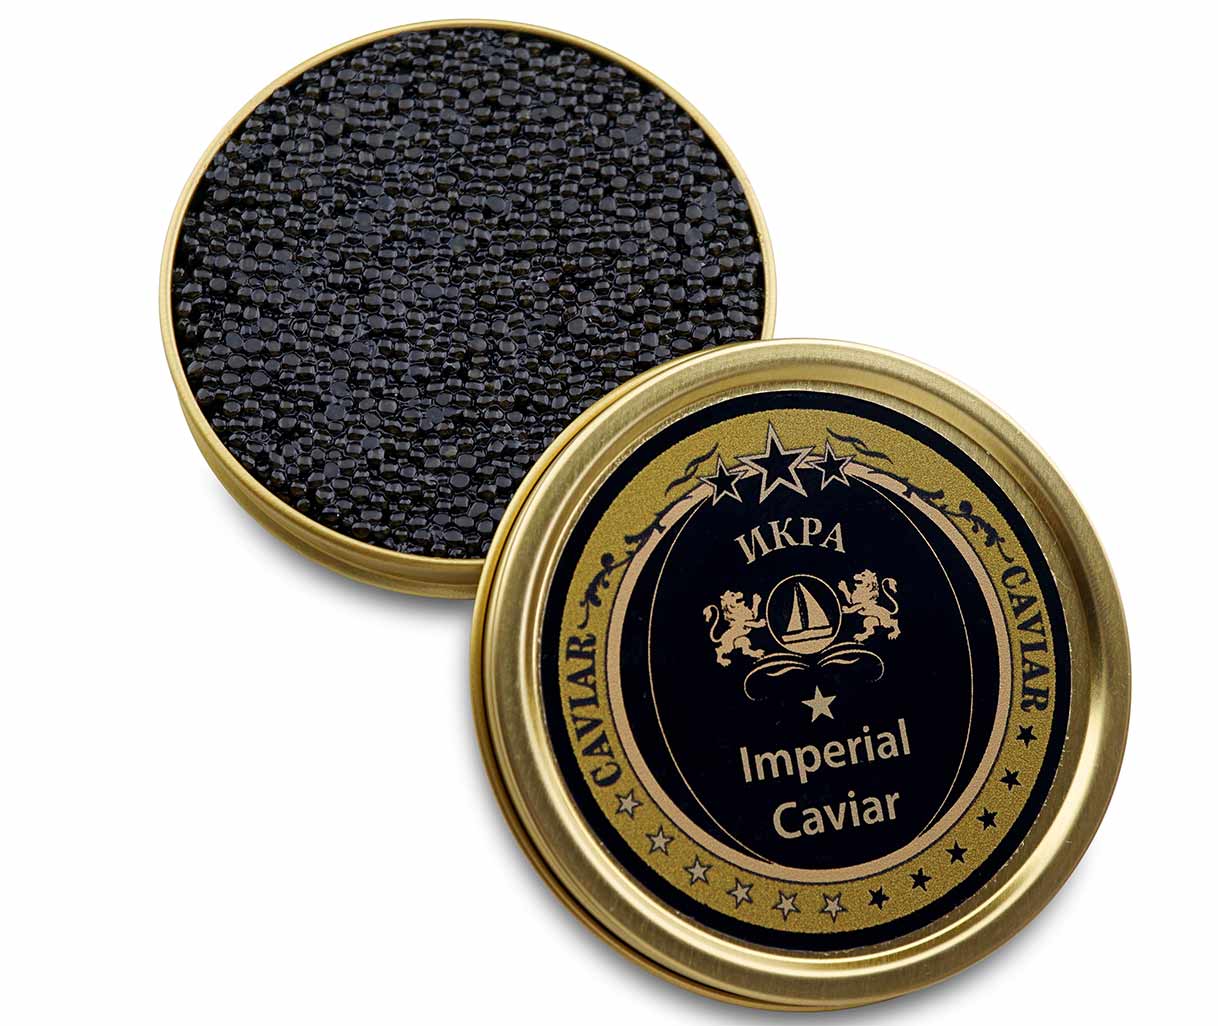 Caviar impérial Premier